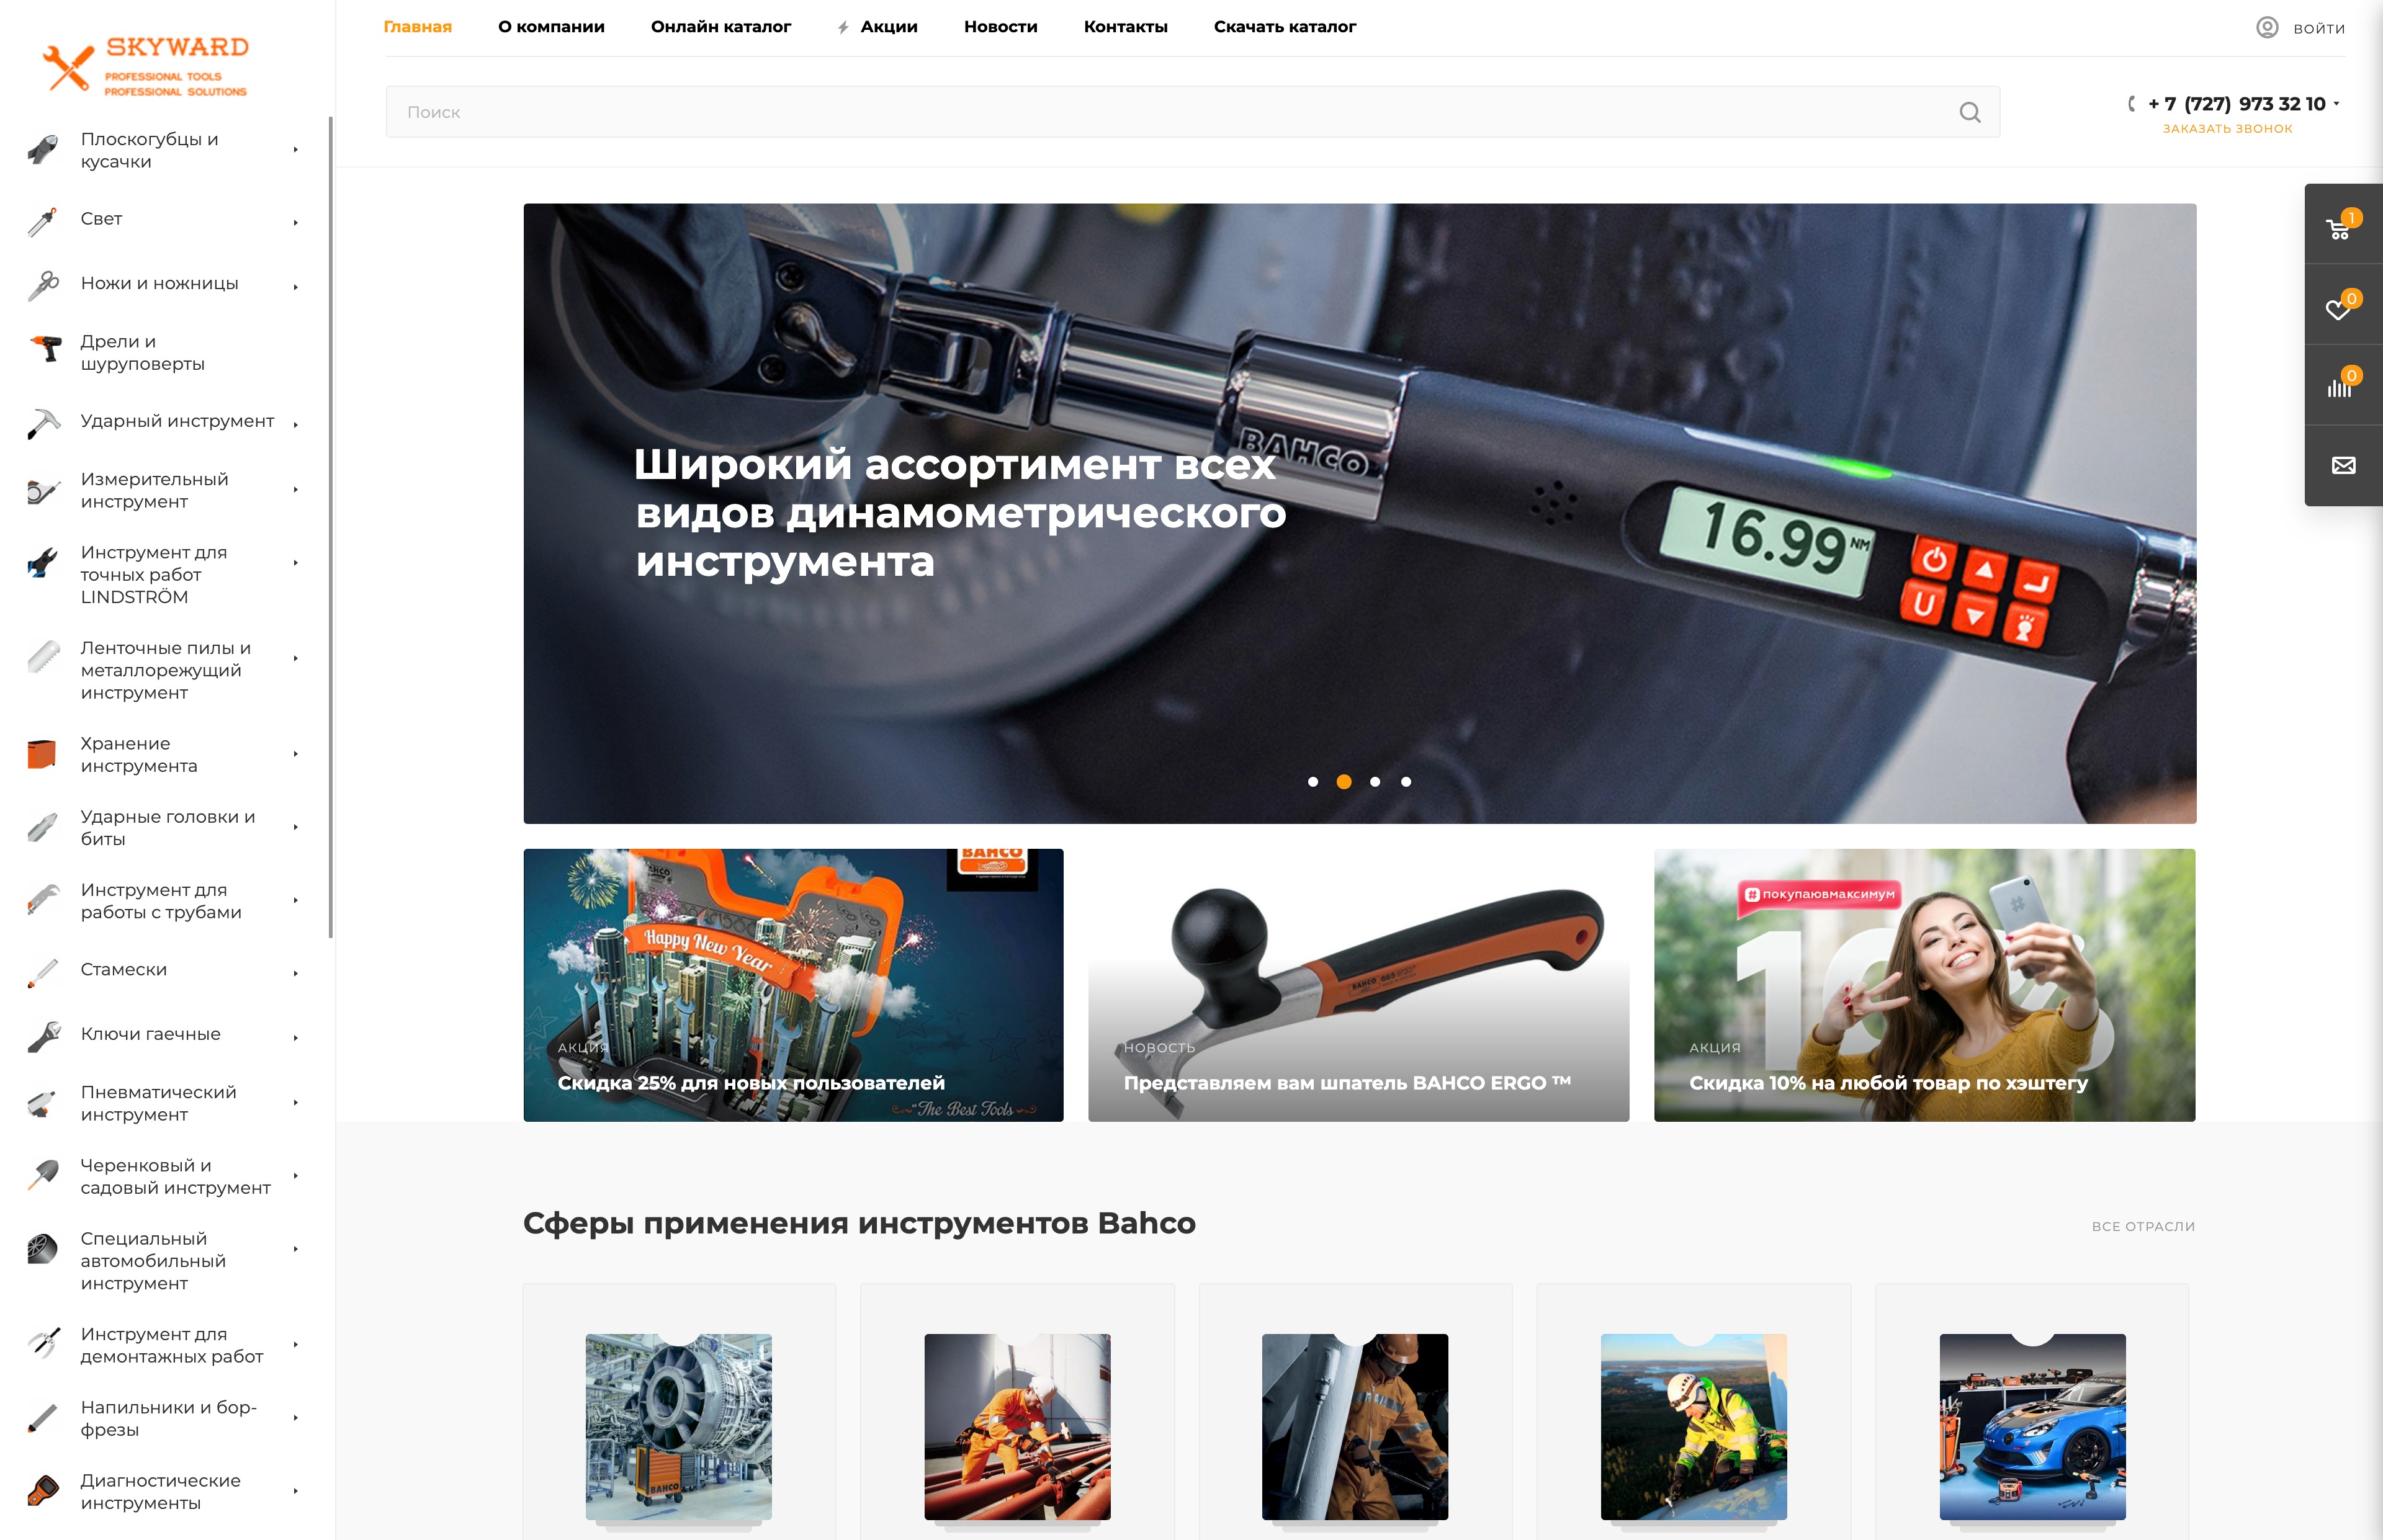 skyward - интернет-магазин инструментов, элекстромонтажного и распределительного оборудования.